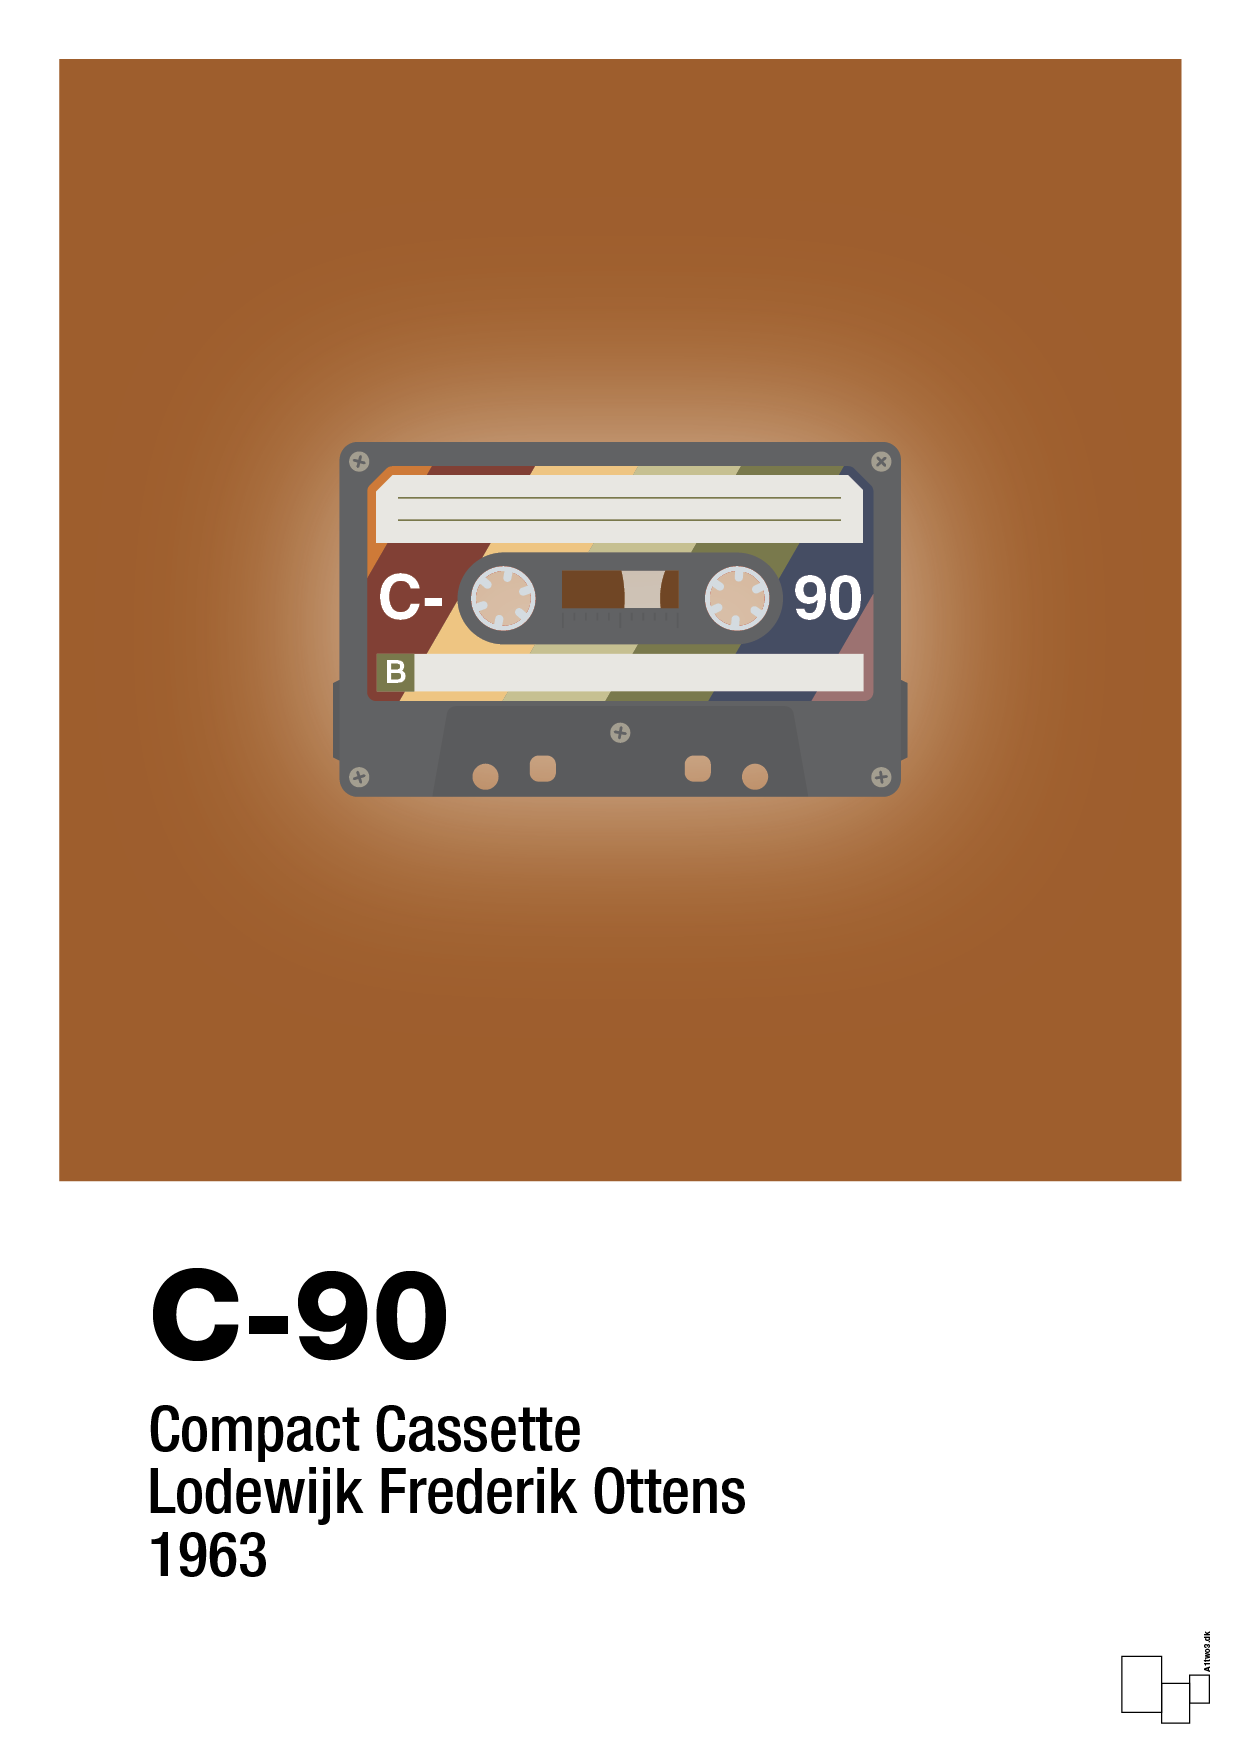 kassettebånd c-90 - Plakat med Grafik i Cognac